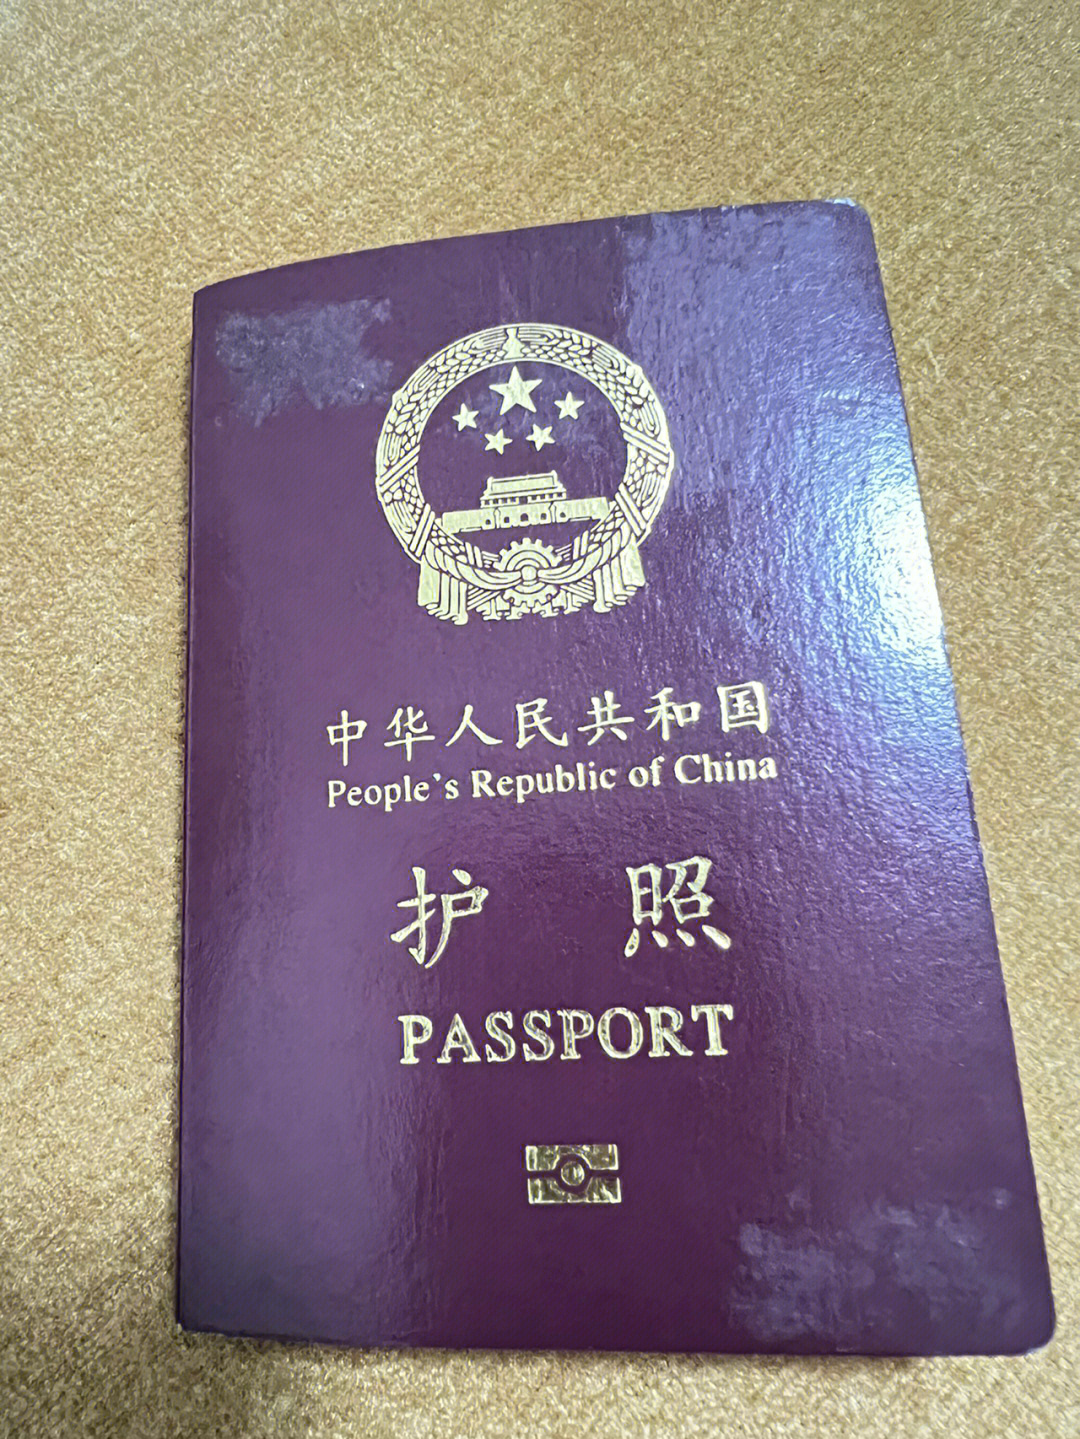 你的护照停留在哪一年哪个地方呢